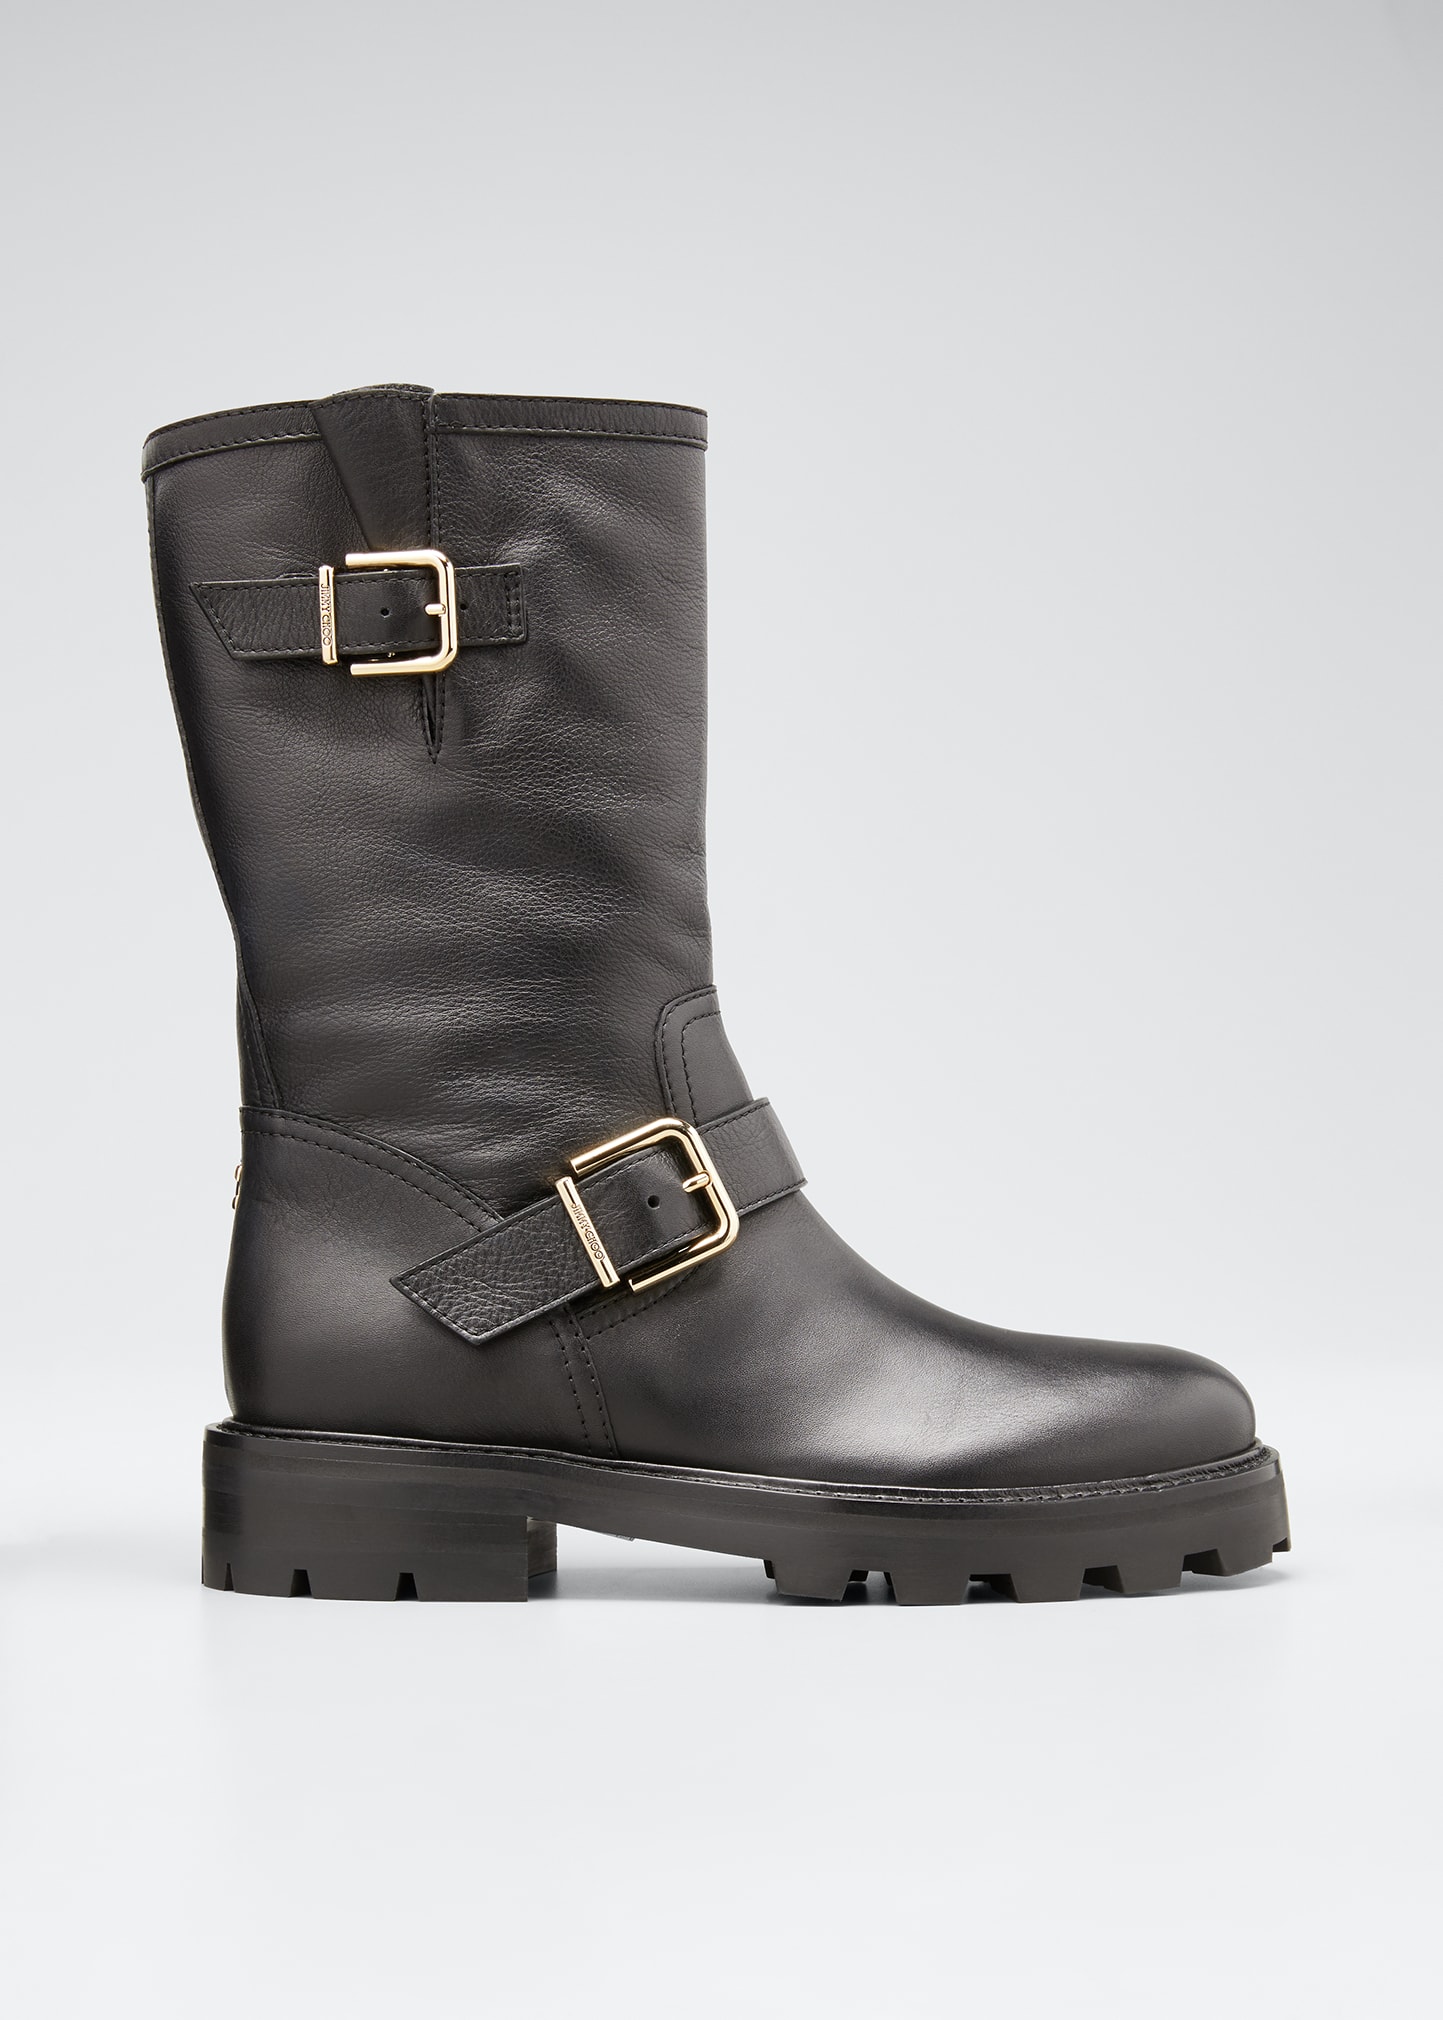 Aquazzura Leather Lace-Up Tall Rain Boots - Bergdorf Goodman